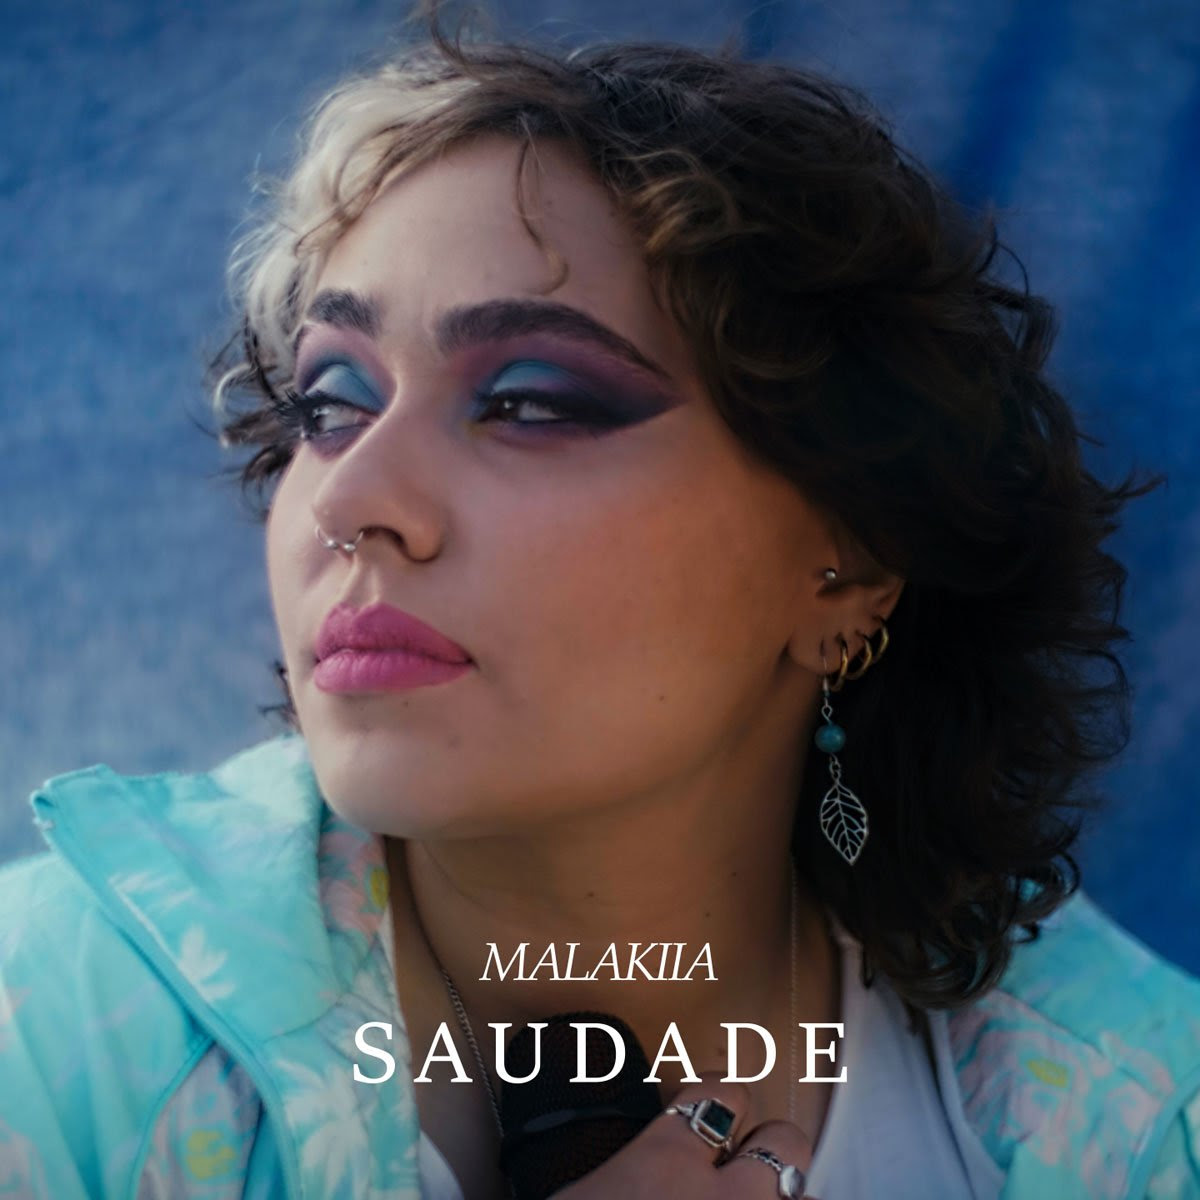 Da venerdì 20 ottobre in rotazione radiofonica “Saudade” il nuovo singolo di Malakiia